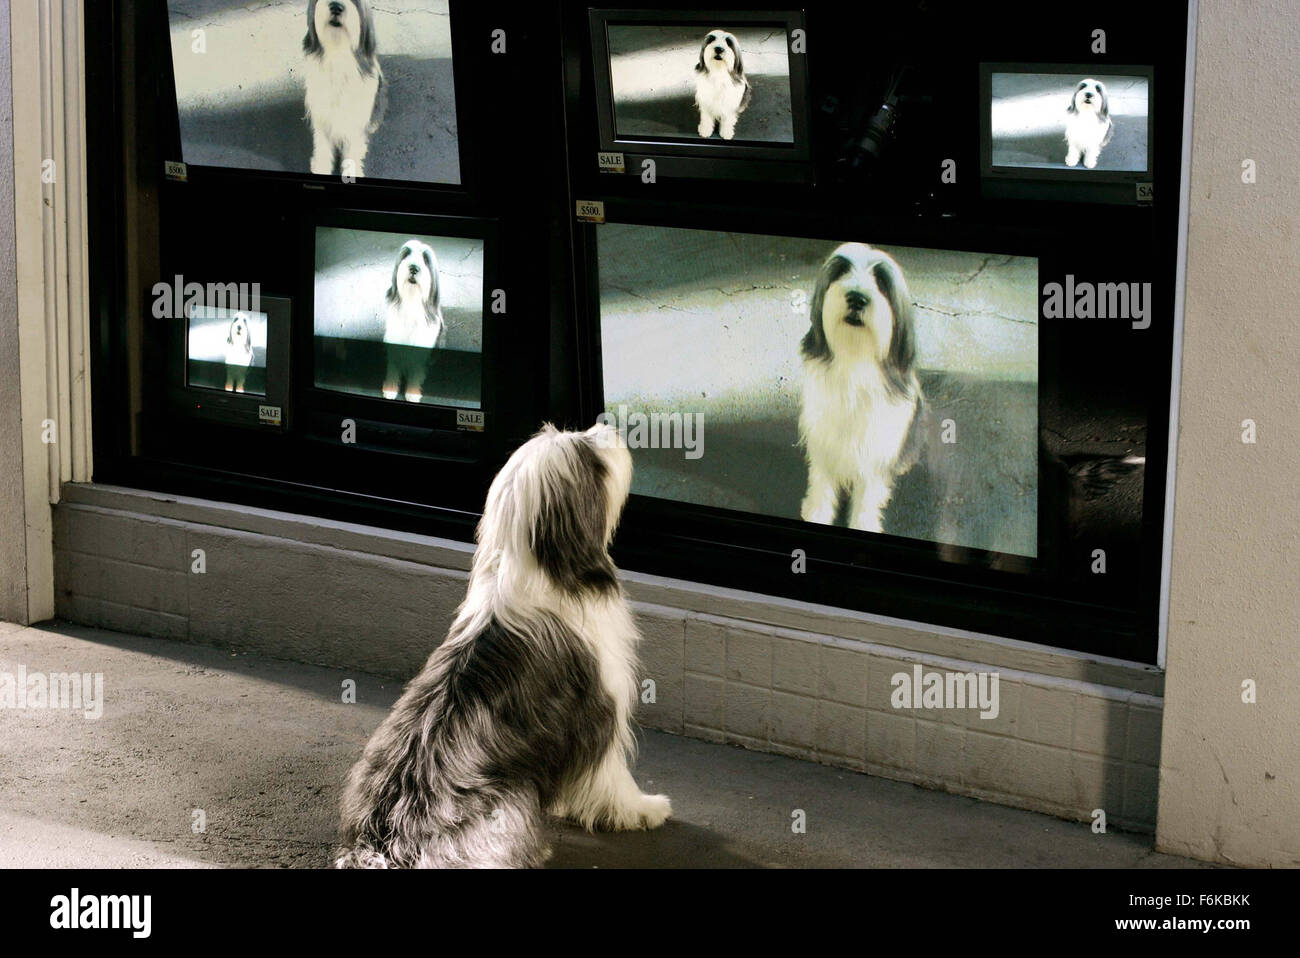 Data di rilascio: 10 marzo 2006. Il titolo del filmato: il cane Shaggy.  STUDIO: Walt Disney Pictures. Trama: un uomo cerca di vivere una vita  normale nonostante il fatto che egli talvolta